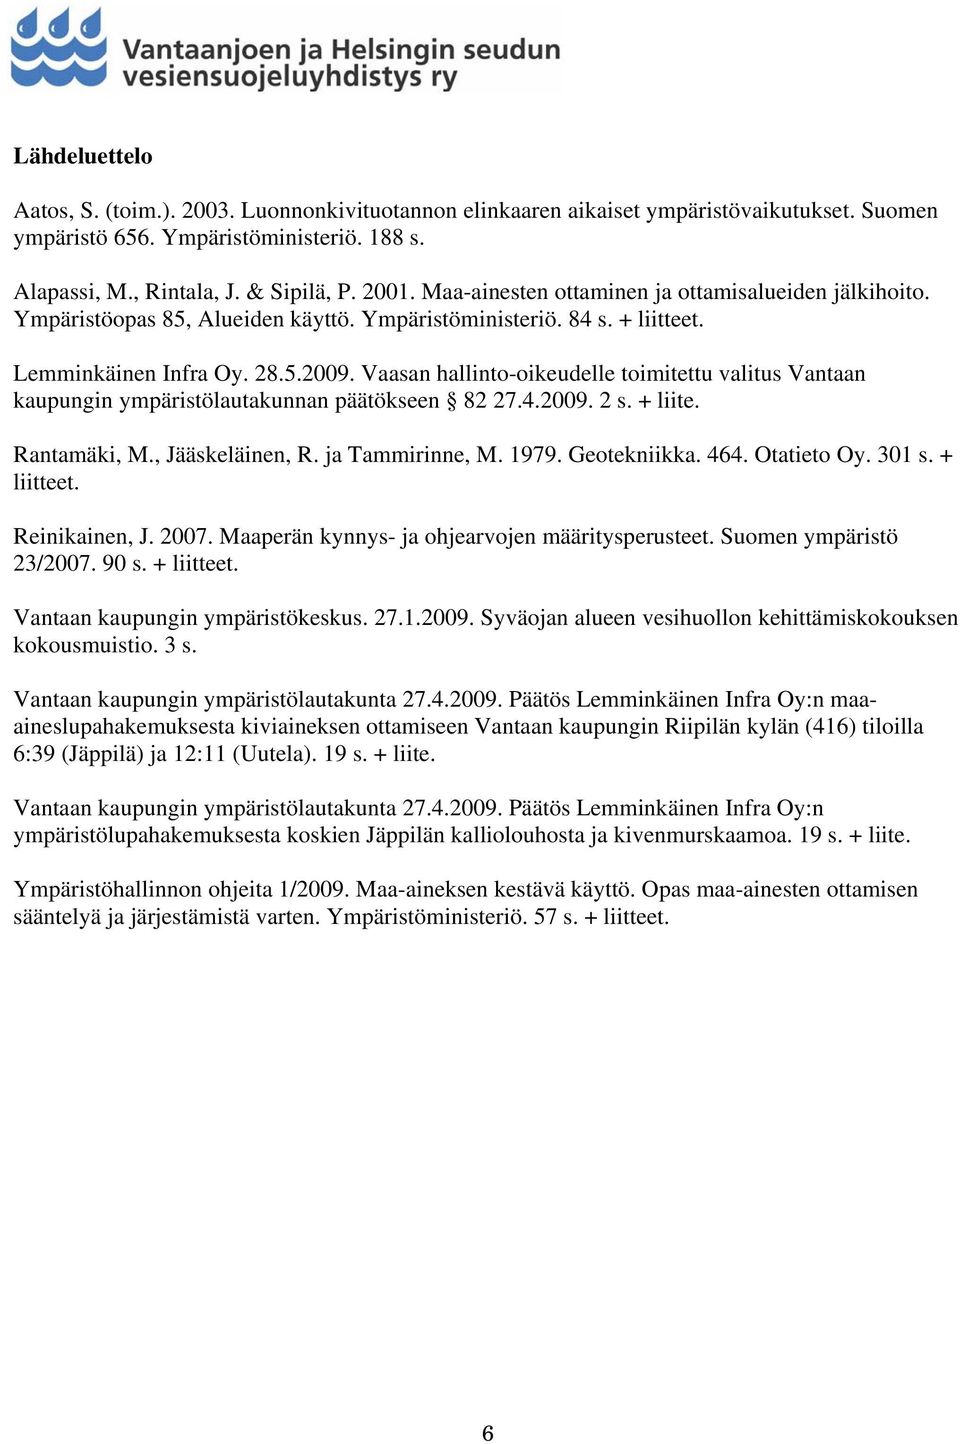 Vaasan hallinto-oikeudelle toimitettu valitus Vantaan kaupungin ympäristölautakunnan päätökseen 82 27.4.2009. 2 s. + liite. Rantamäki, M., Jääskeläinen, R. ja Tammirinne, M. 1979. Geotekniikka. 464.